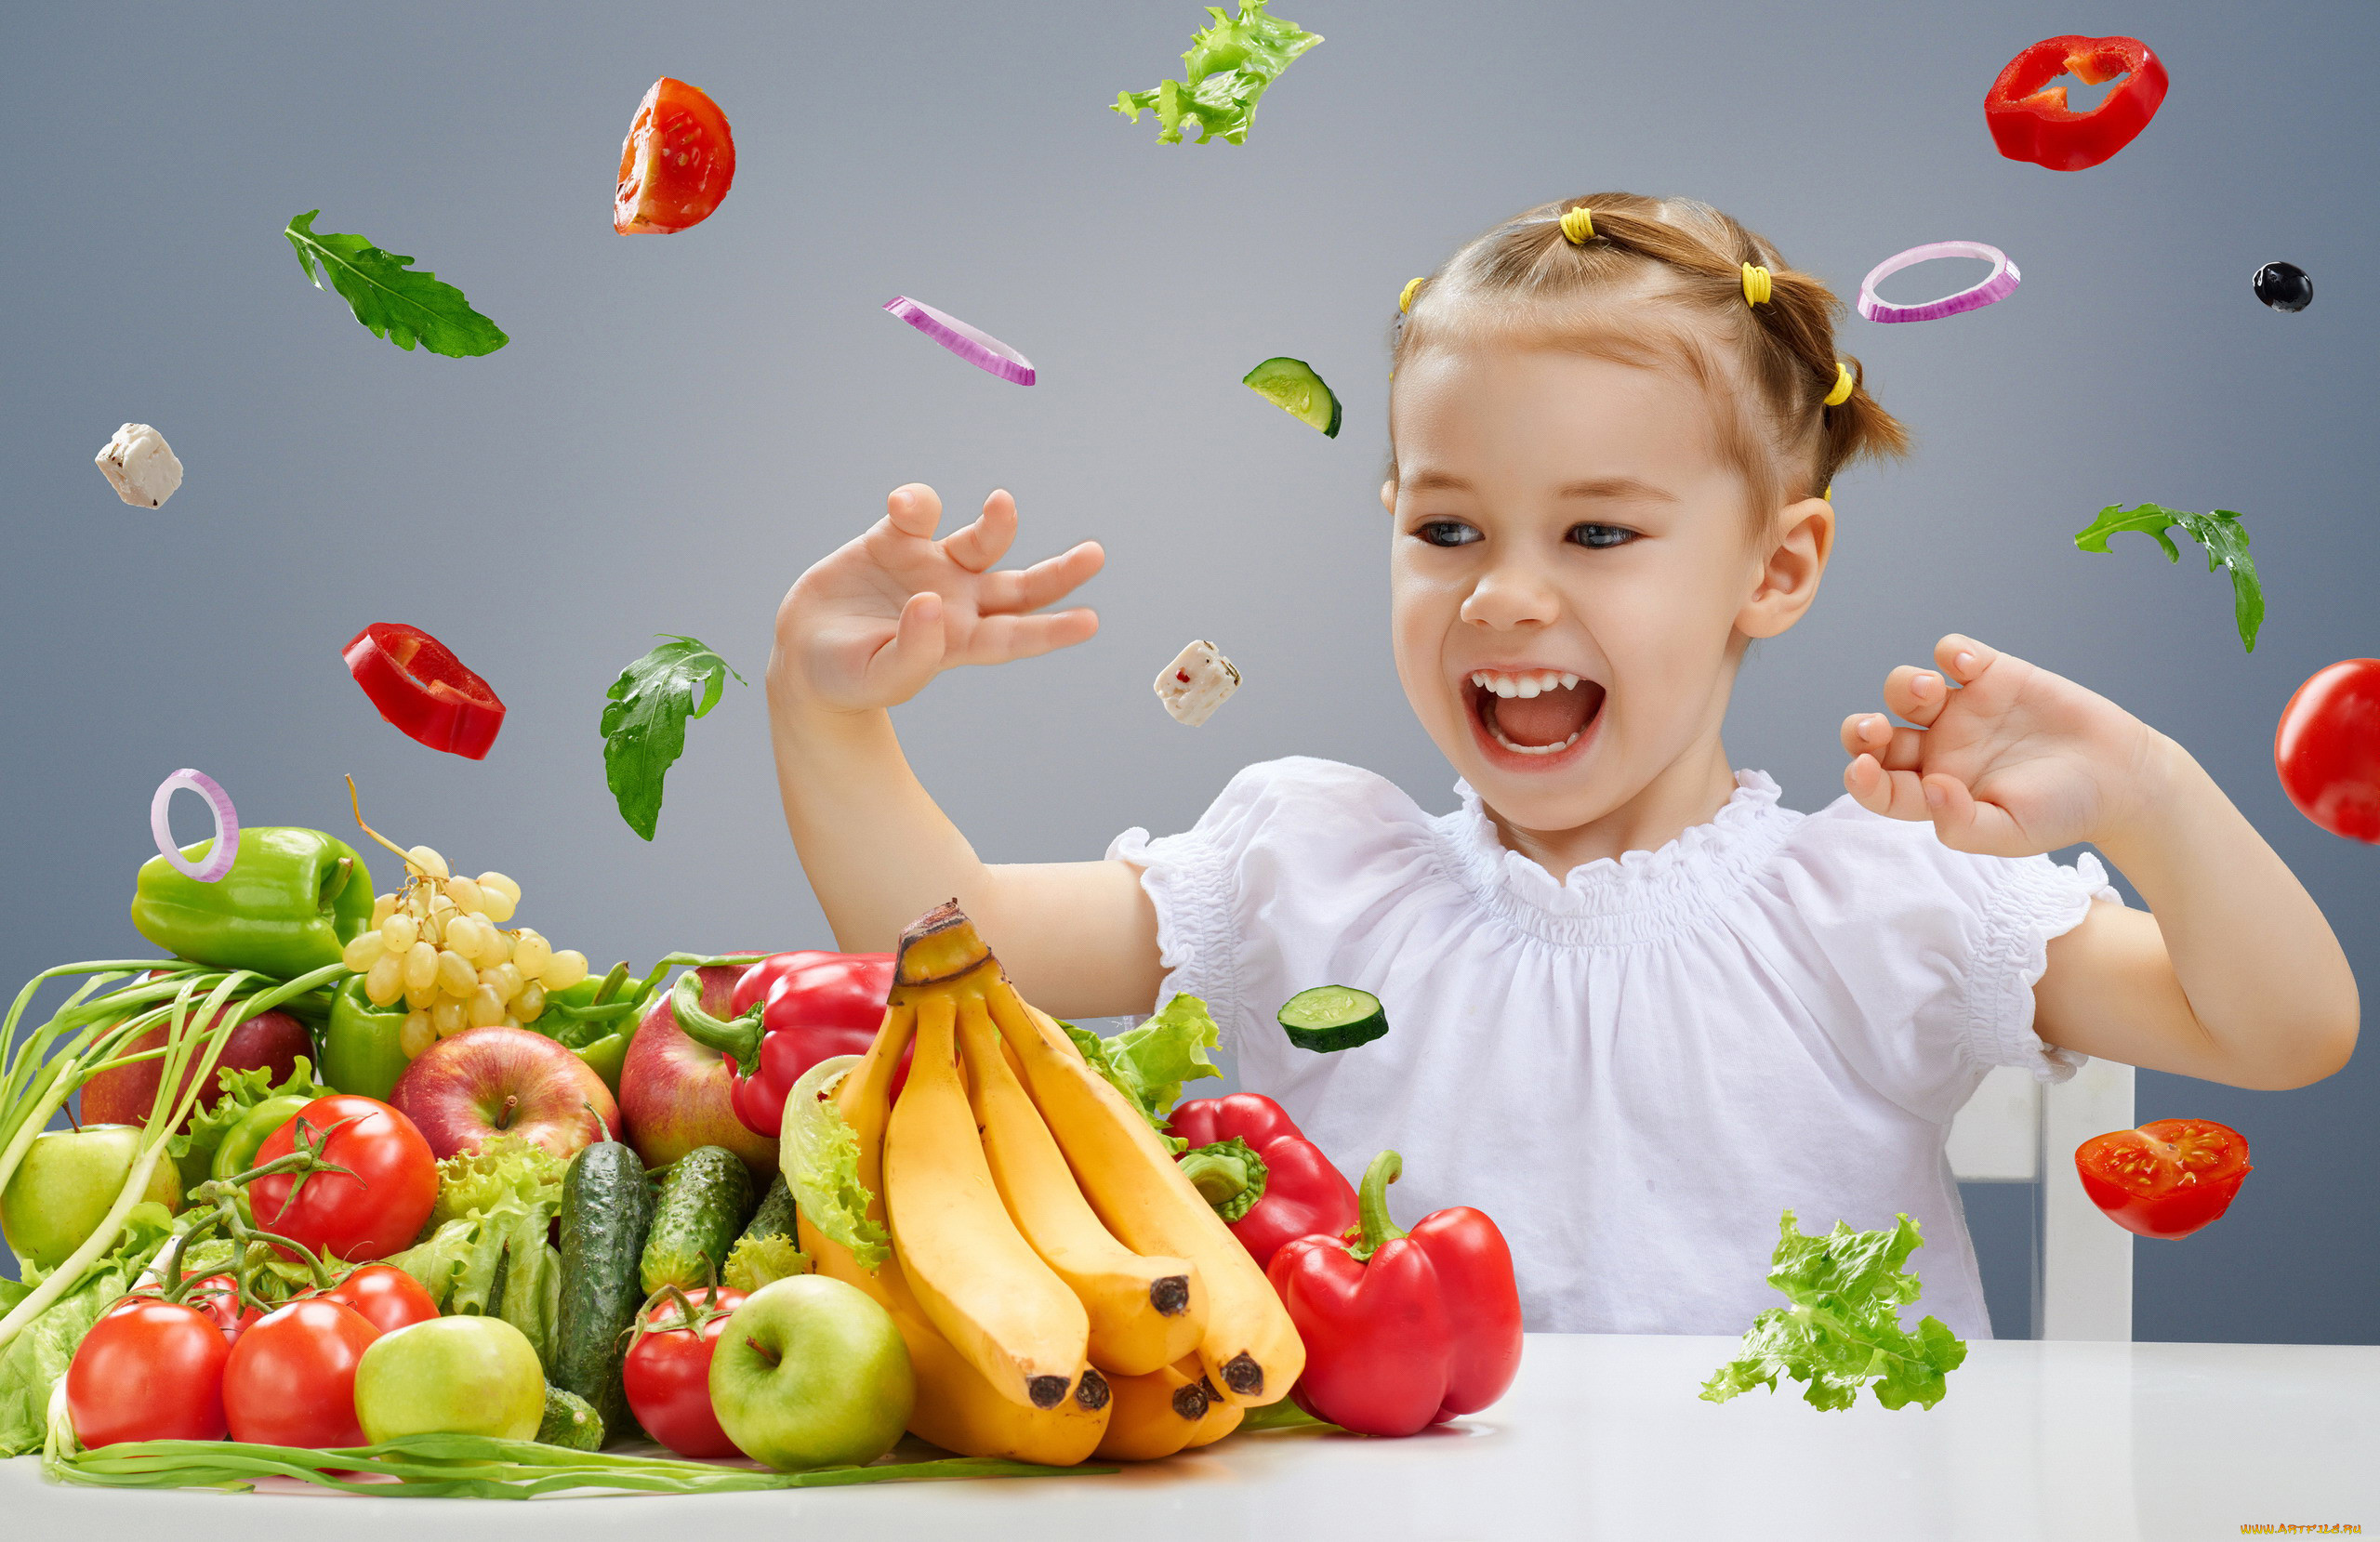 Кидать фрукты. Овощи и фрукты для детей. Вкусная и здоровая пища для детей. Здоровое питание Здоровые дети. Овощи и фрукты в питании детей.